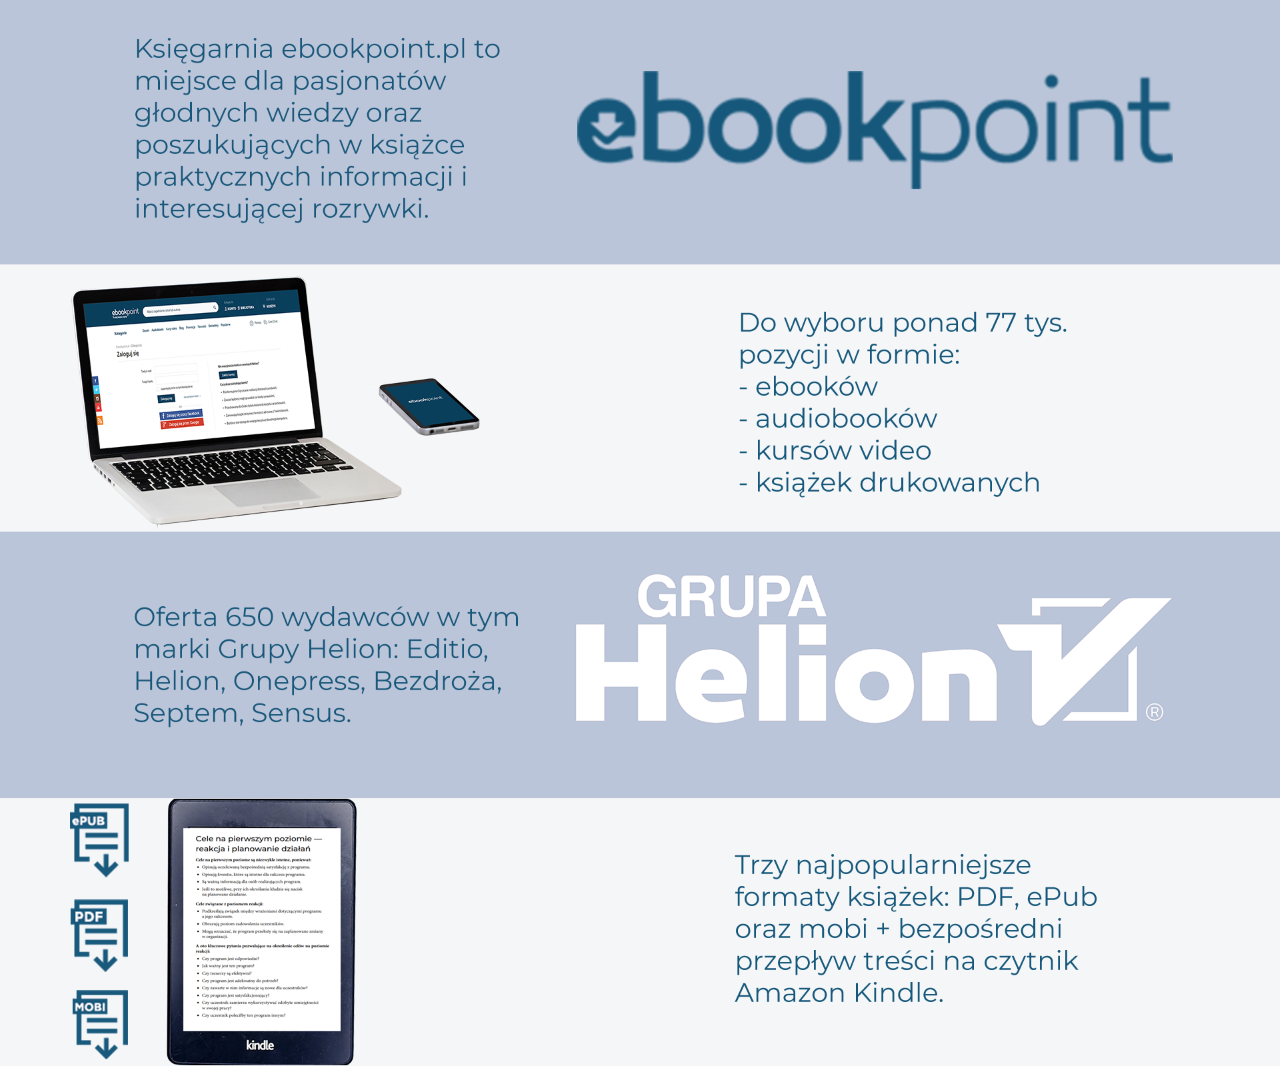 ebookpoint oferta 650 wydawców